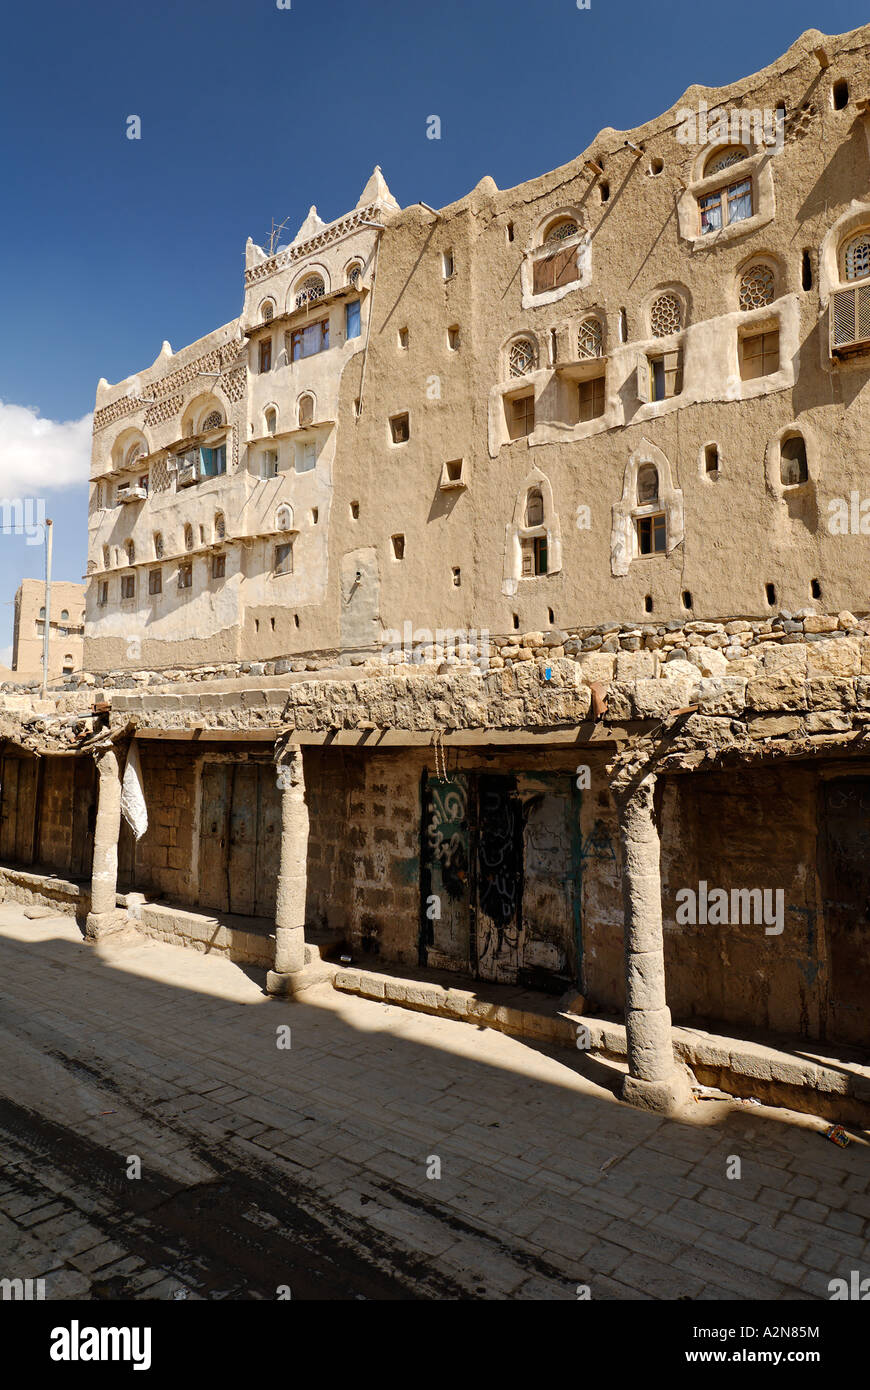 old town of Amran Yemen Stock Photo